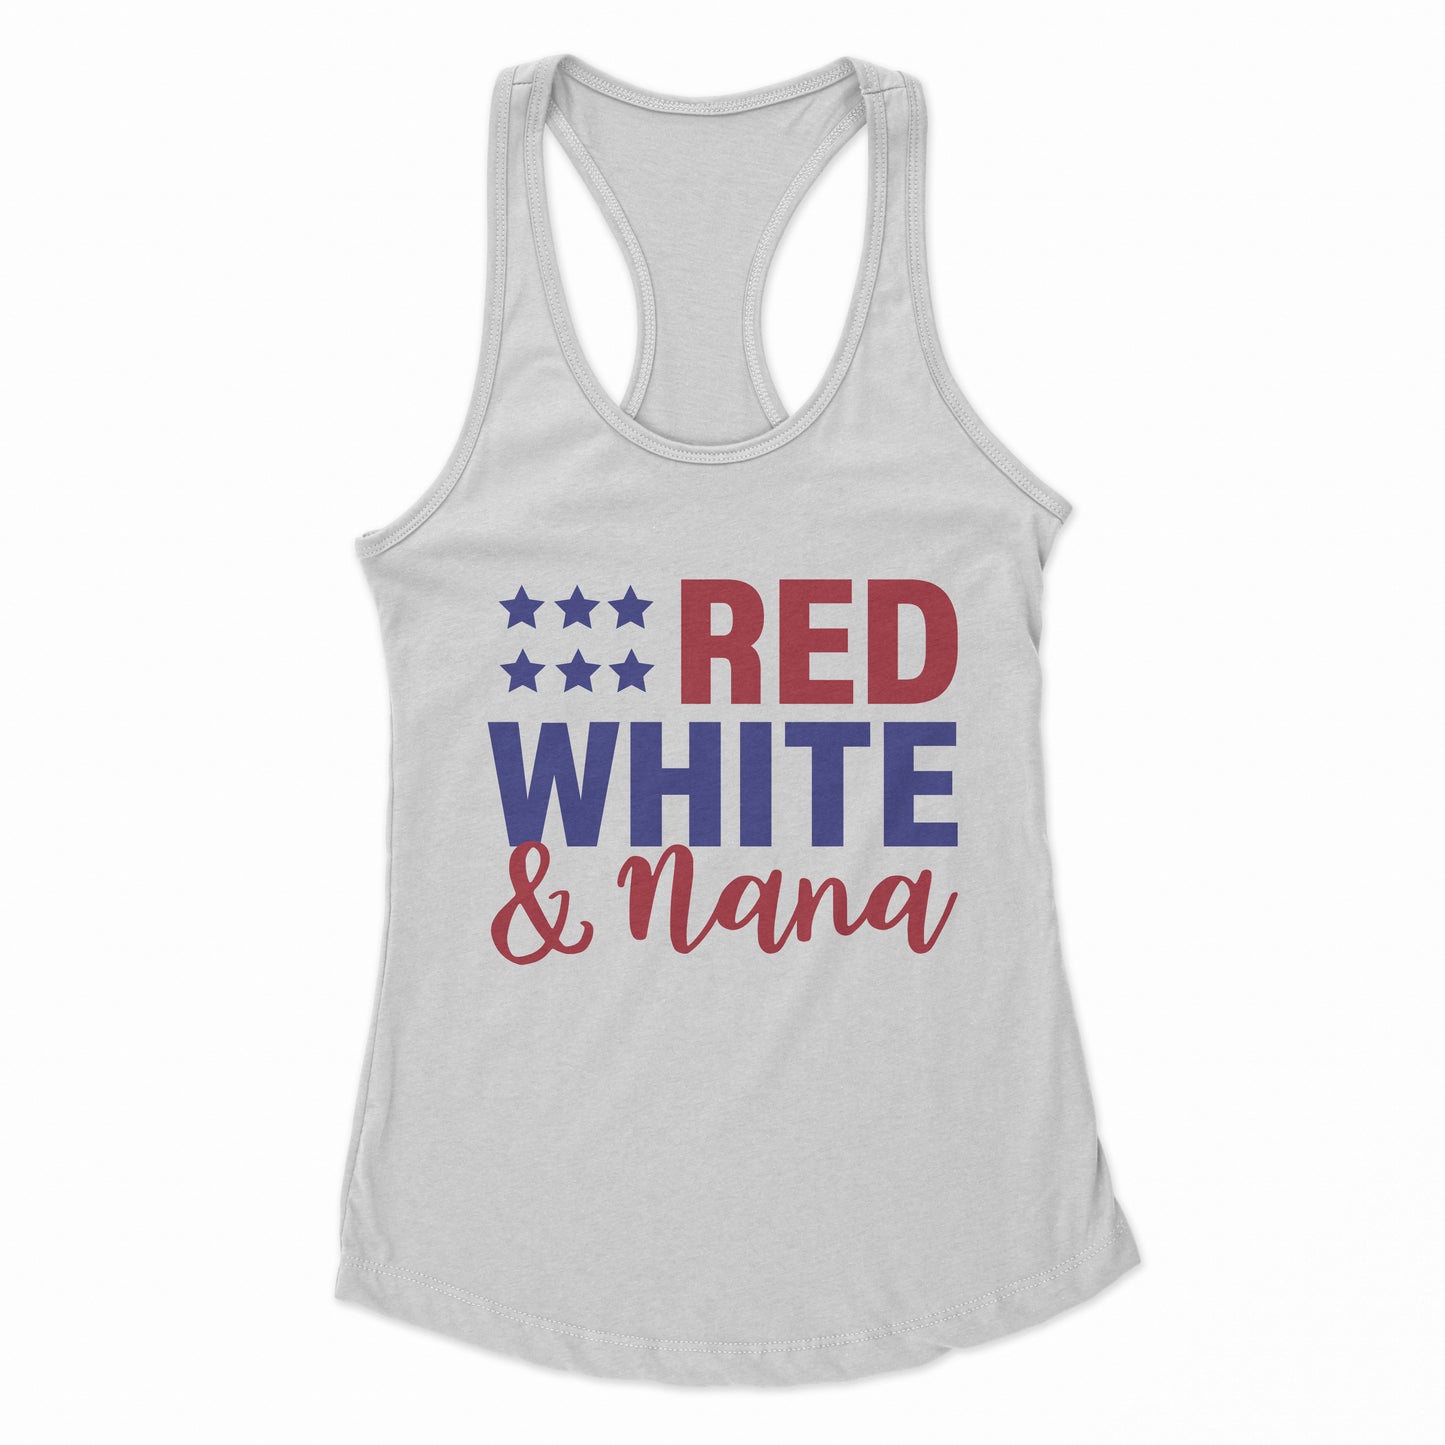 Red White & Nana